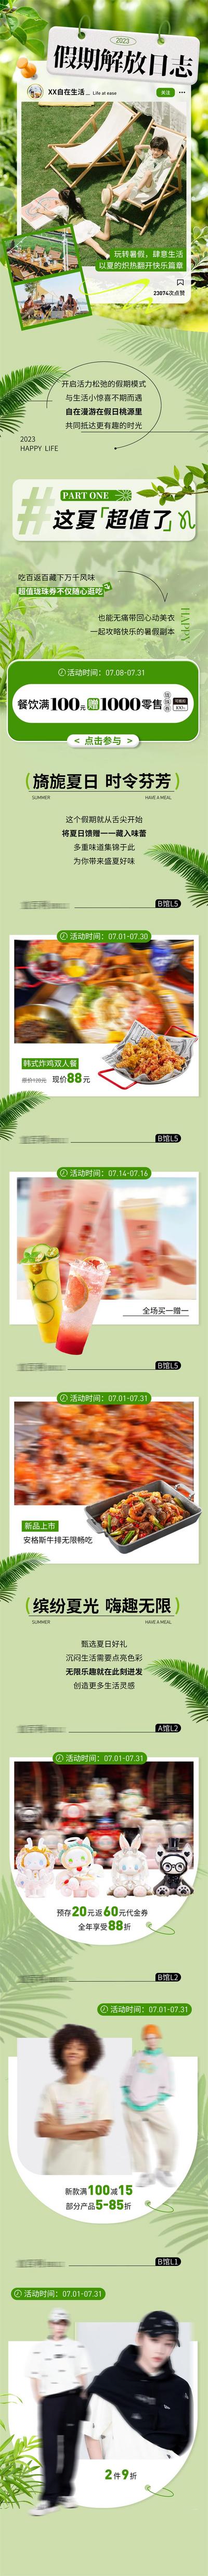 南门网 广告 海报 专题 假期 长图 活动 促销 商场 夏日 暑假 推文